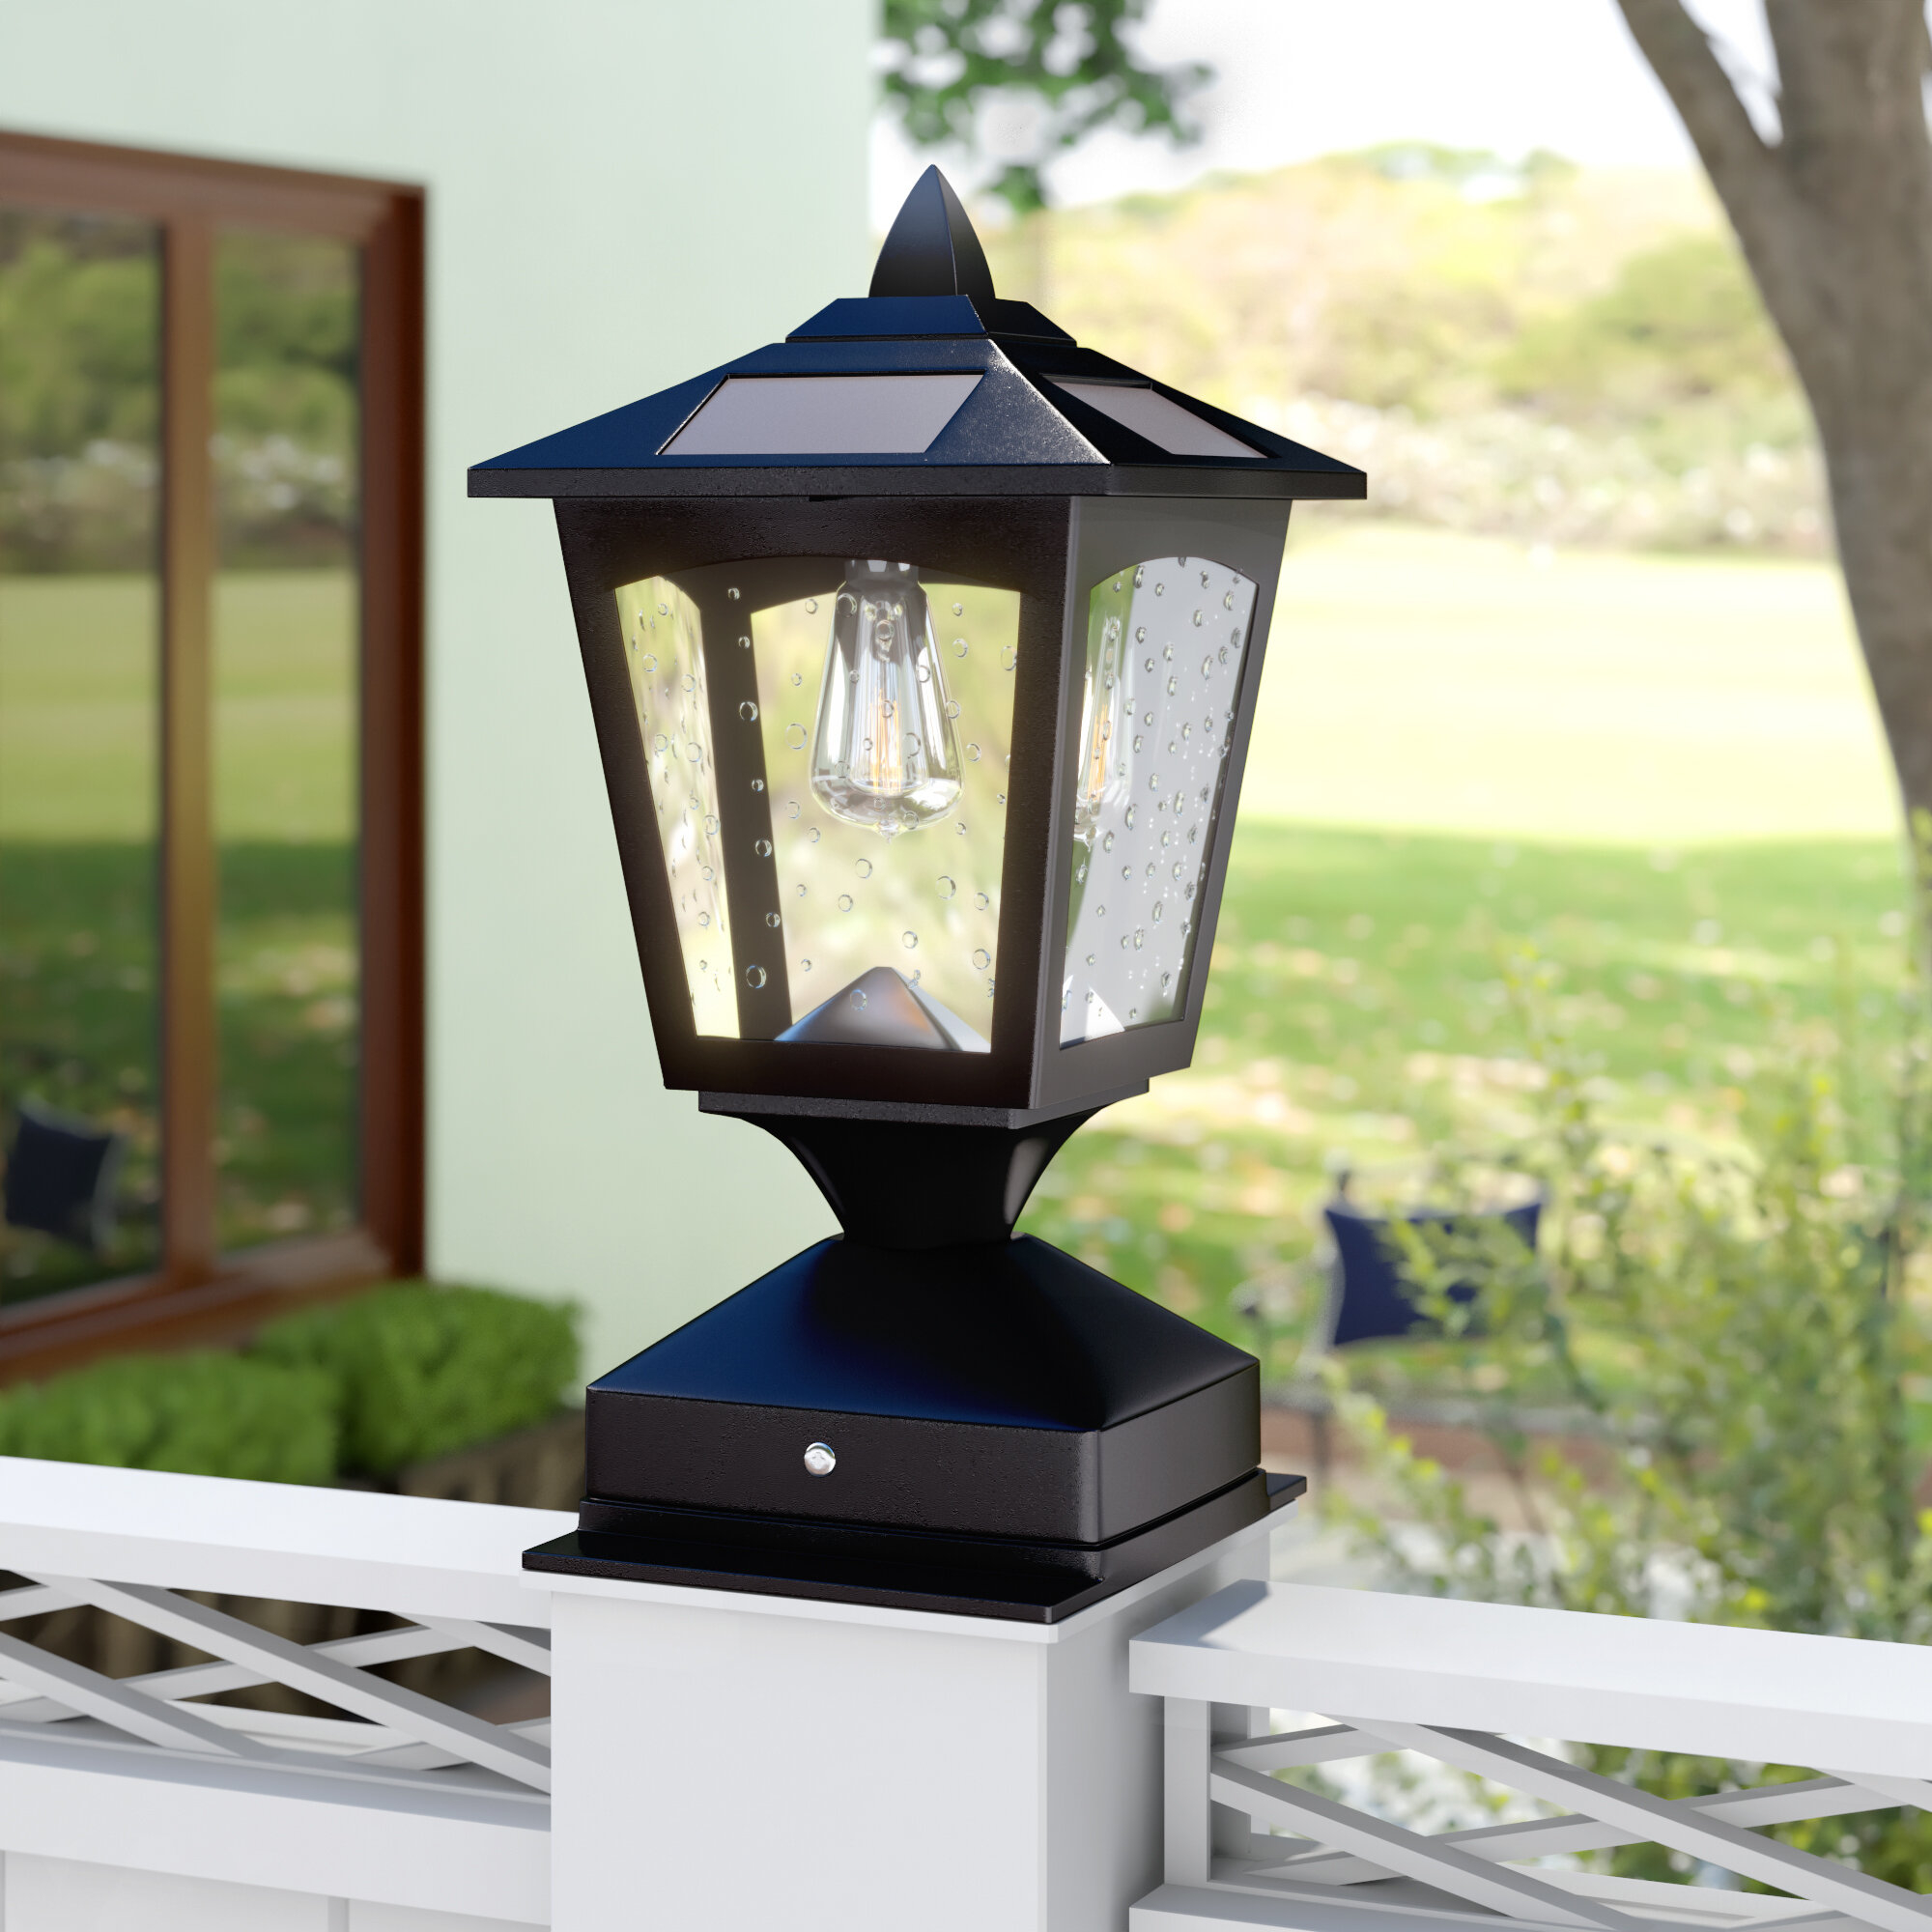 Outdoor Solar Post Lights Visualhunt, Outdoor Lamp Post Lights Solar